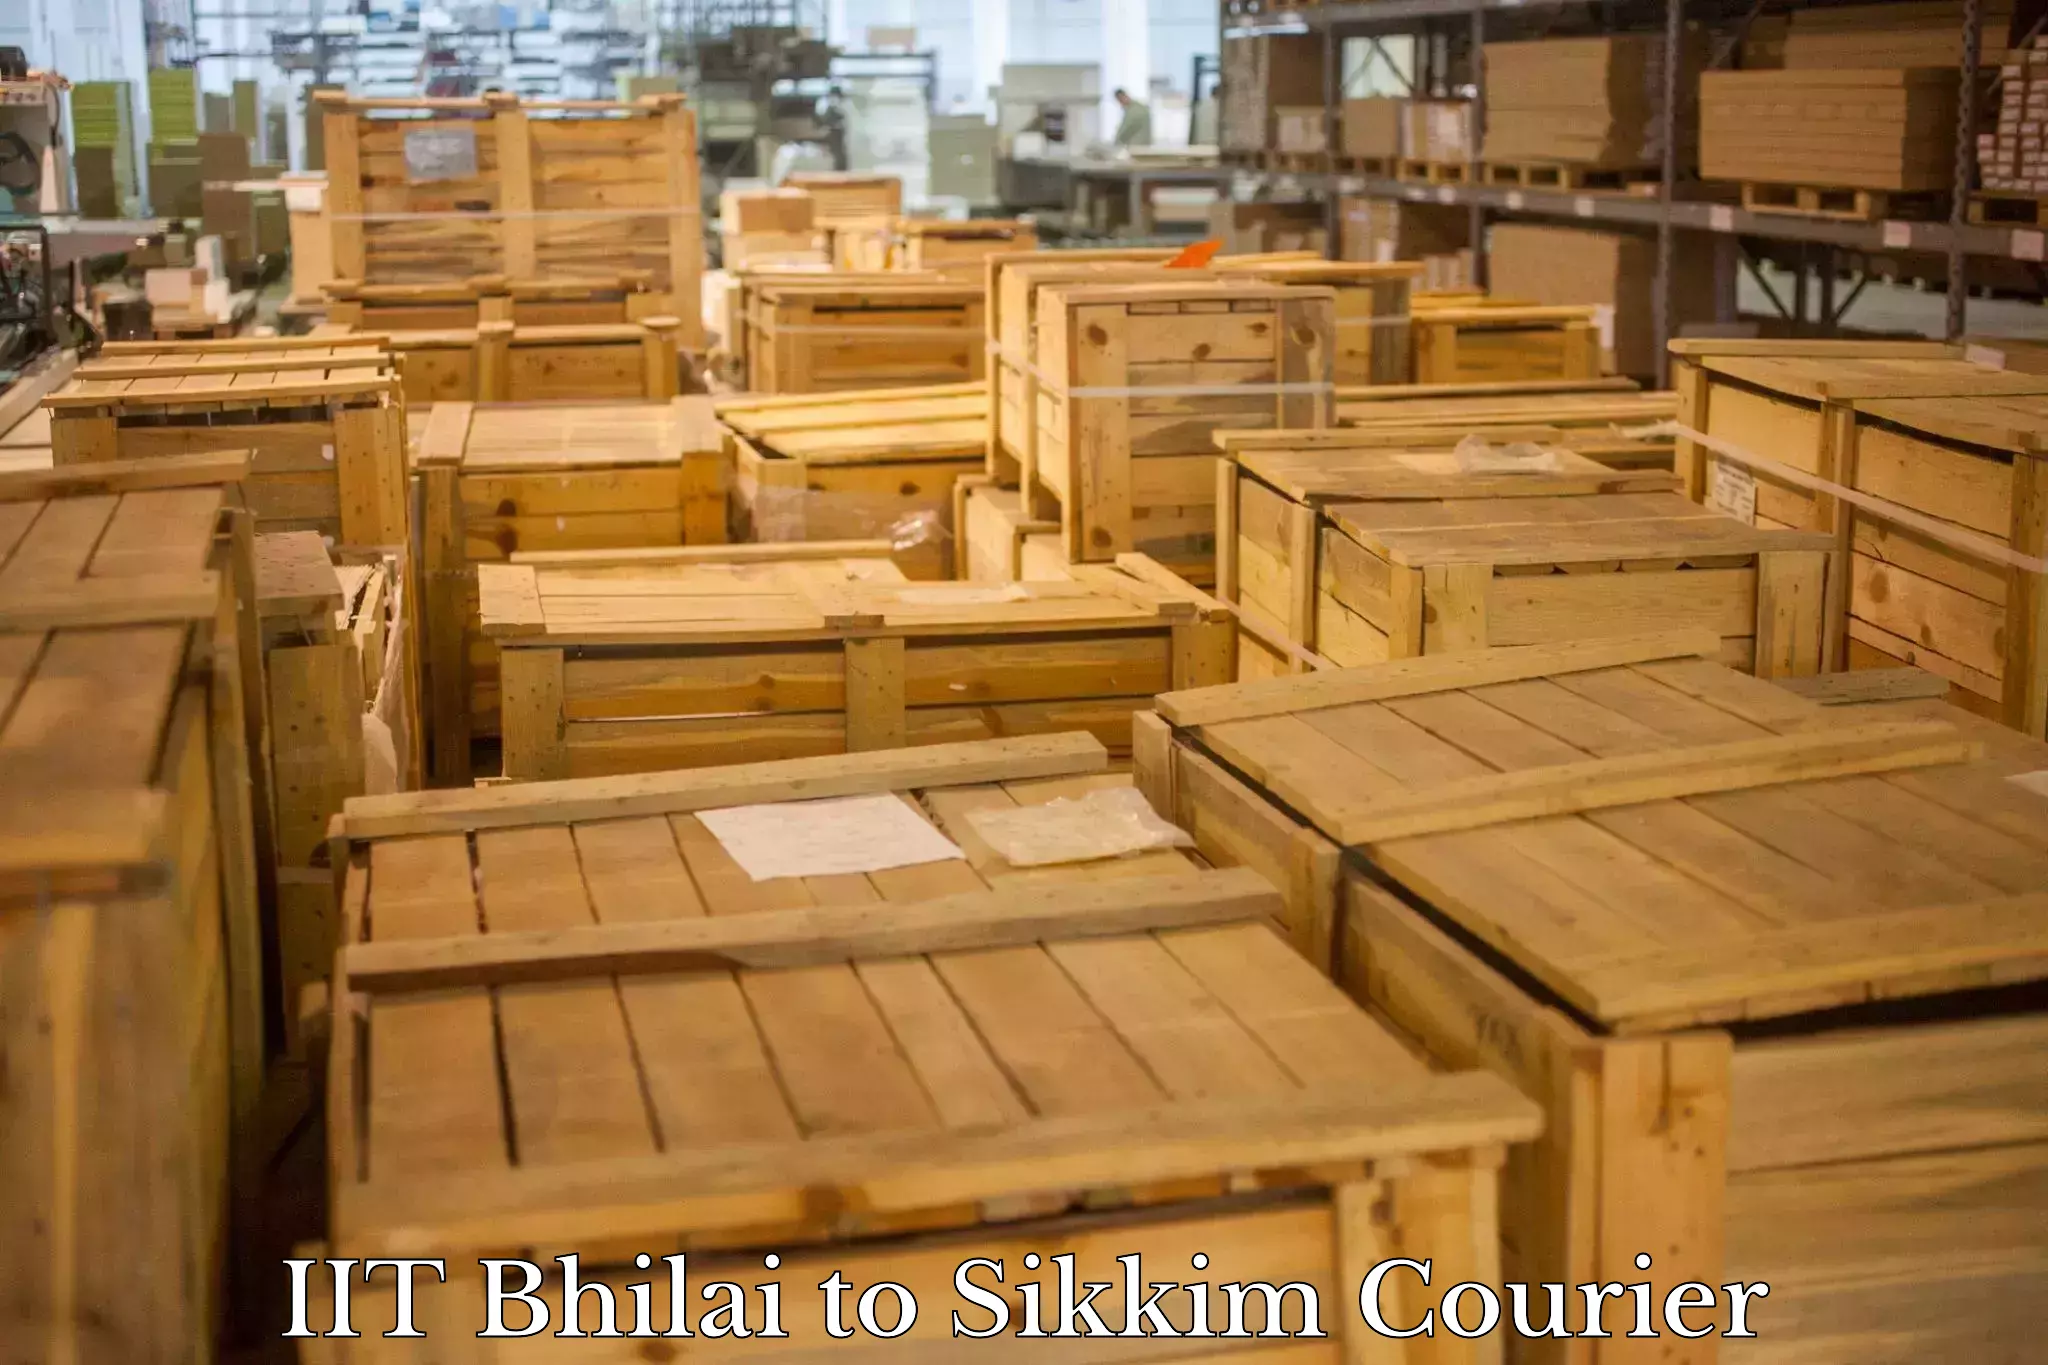 Return courier service IIT Bhilai to Singtam